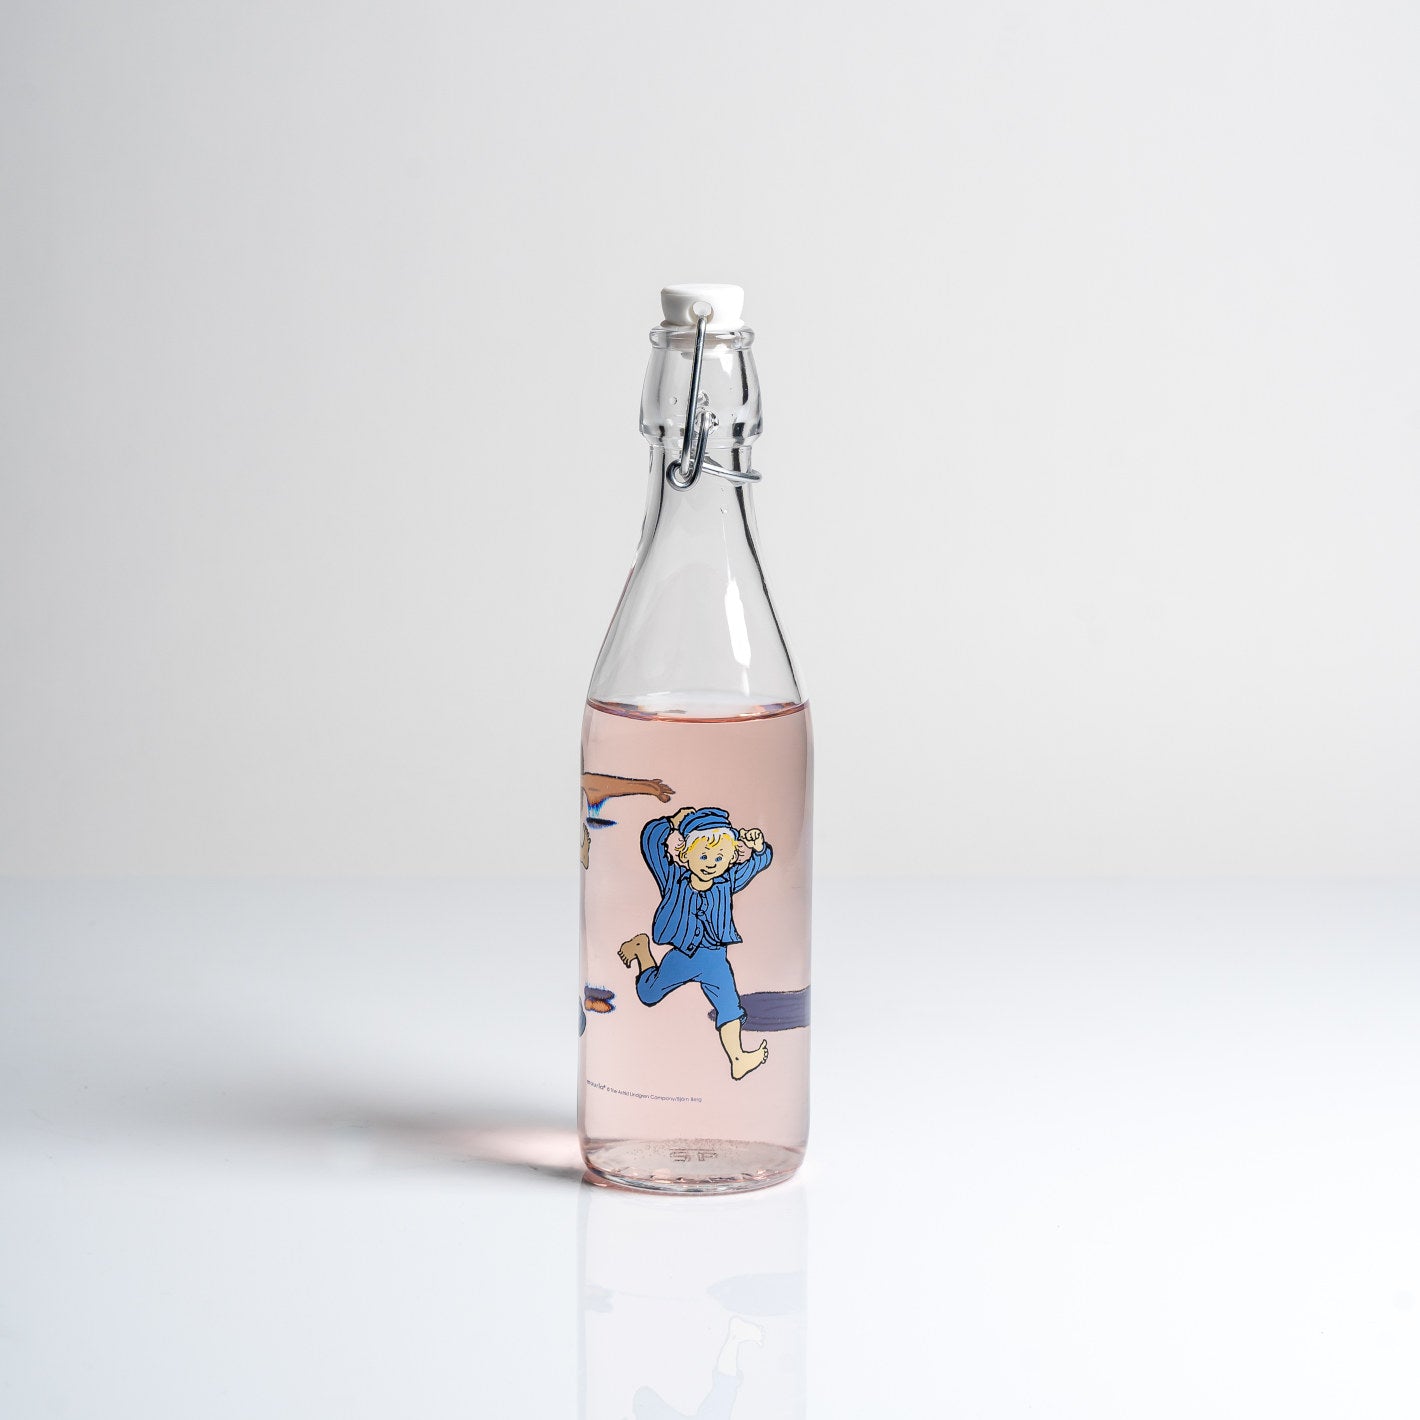 Glasflasche: Michel aus Lönneberga - Michel blau 500ml von Muurla